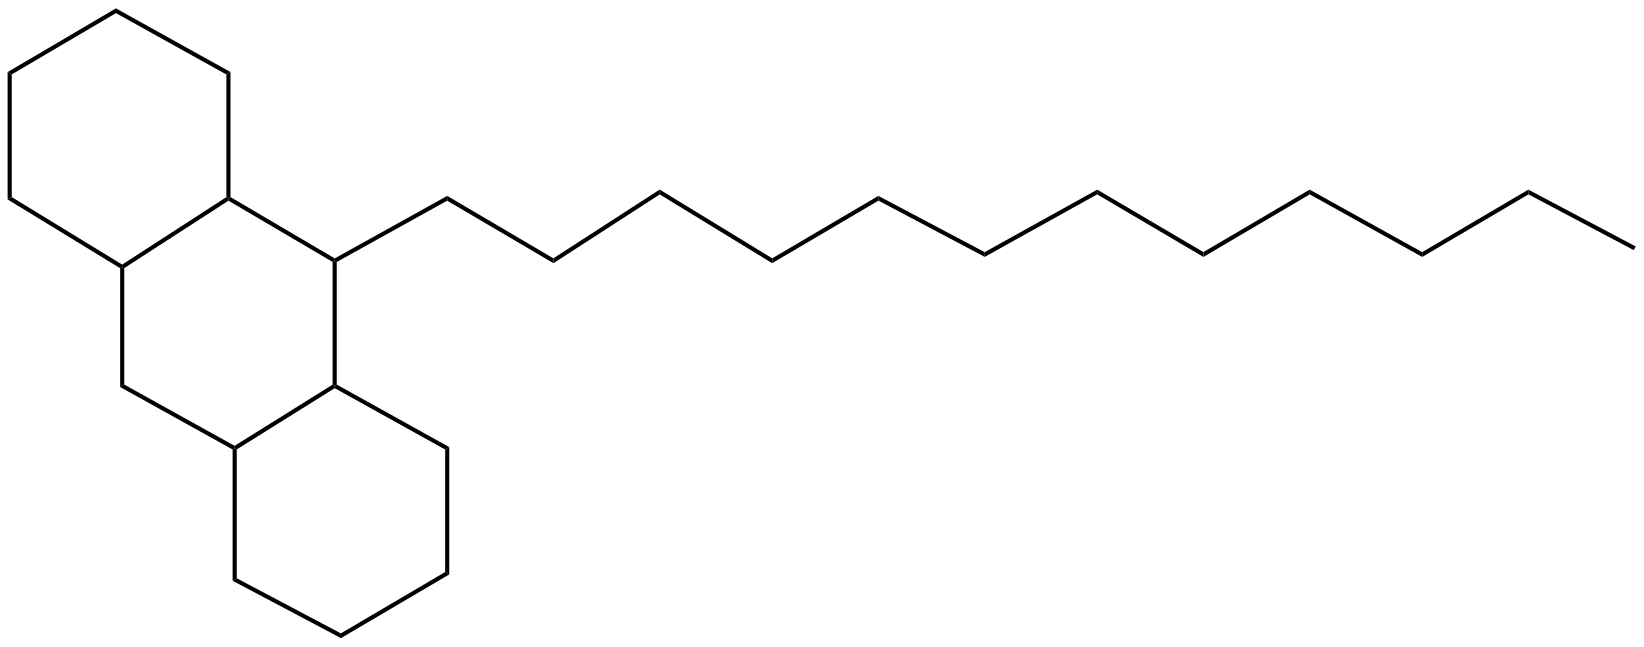 Image of 2-dodecyltricyclo[8.4.0.0(3,8)]tetradecane